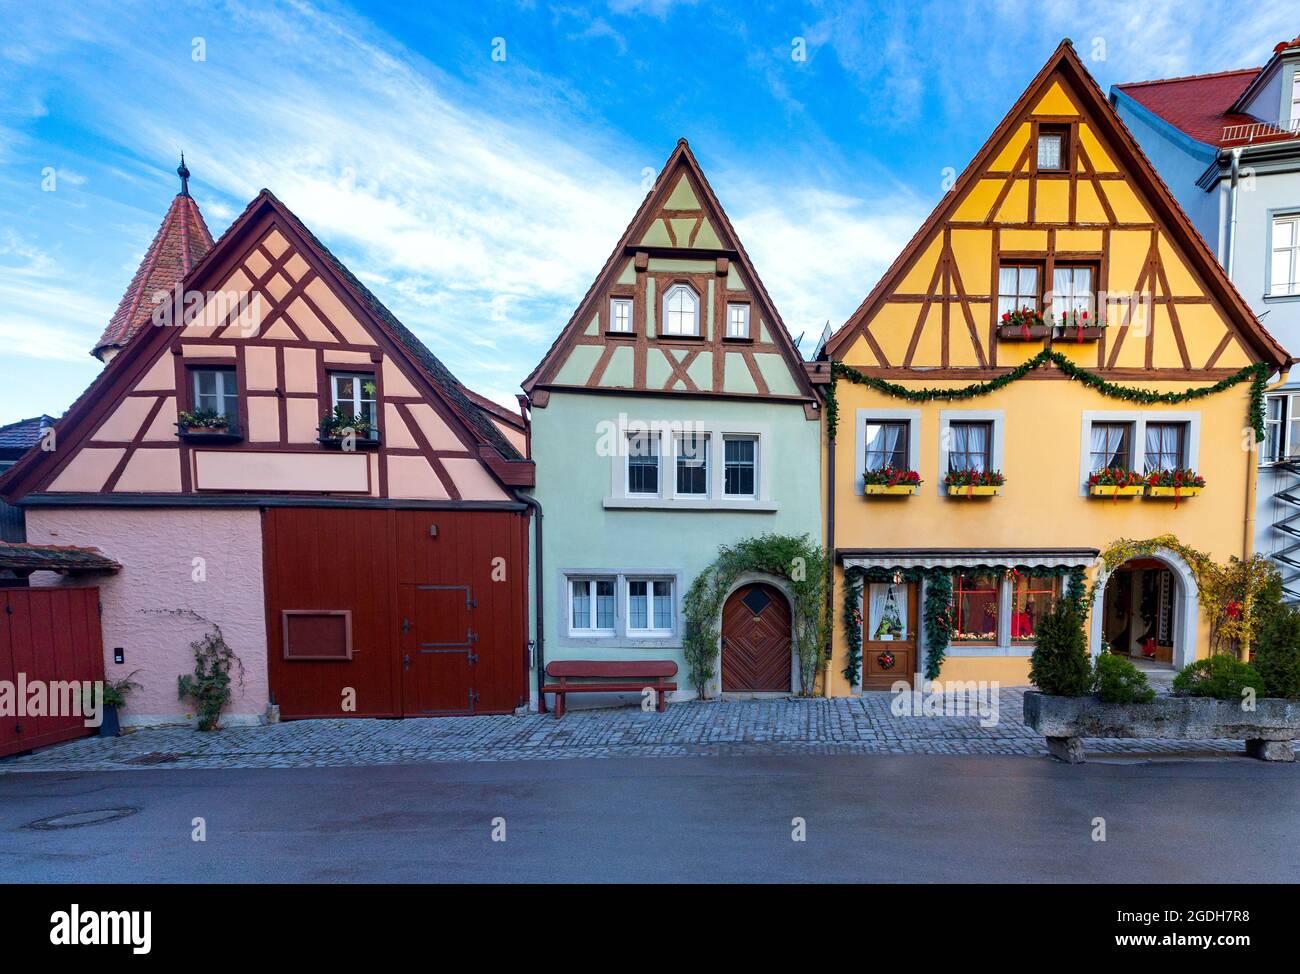 Alte traditionelle mittelalterliche Straße am frühen Morgen. Rothenburg ob der Tauber. Bayern Deutschland. Stockfoto